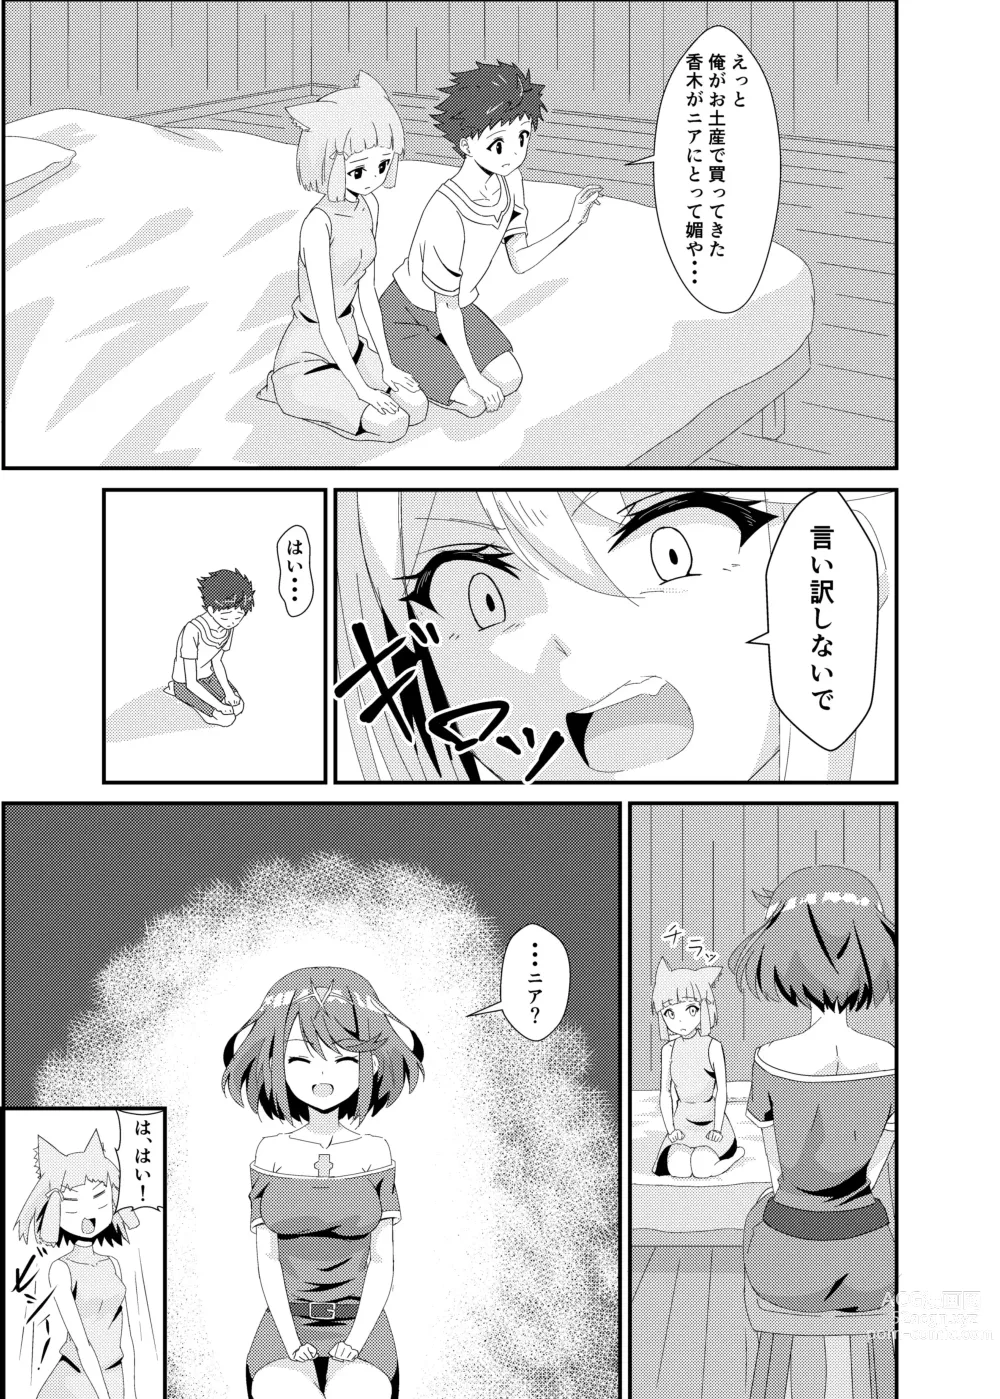 Page 9 of doujinshi Nyan Nyan Nia-chan 2